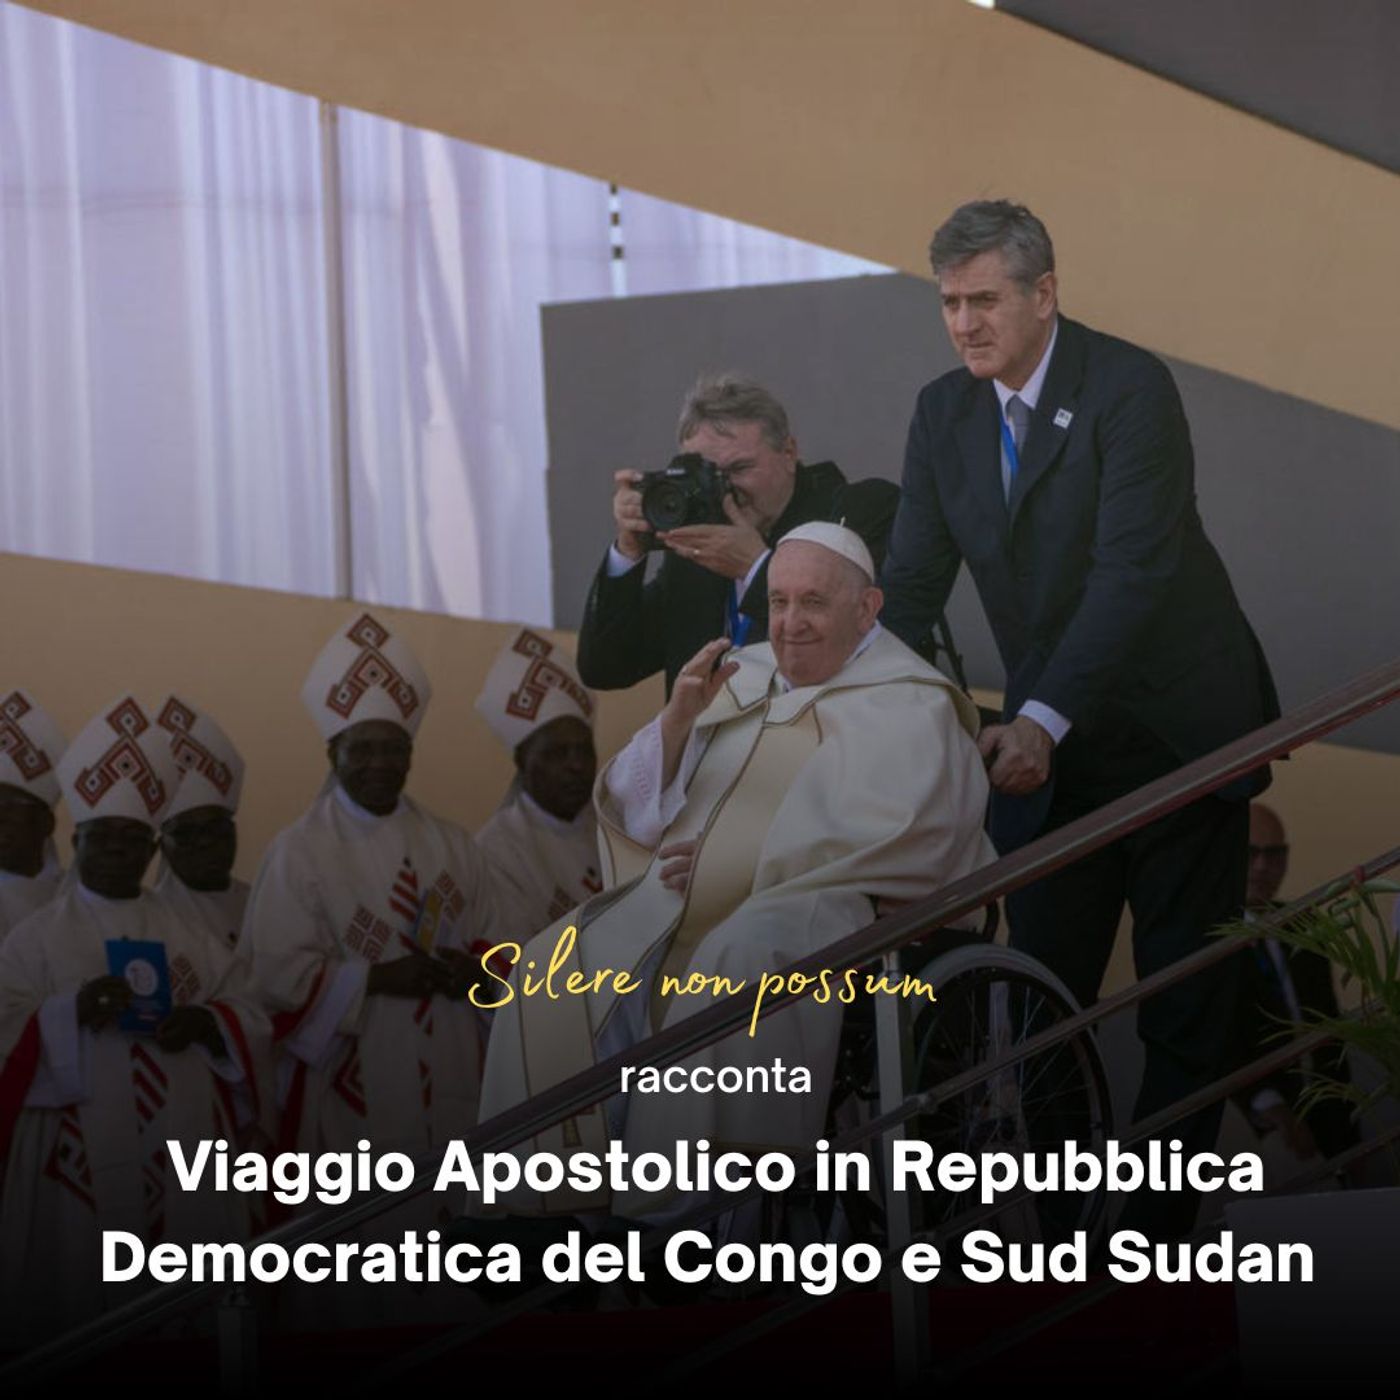 - Day 2 - Viaggio Apostolico in Repubblica Democratica del Congo e Sud Sudan